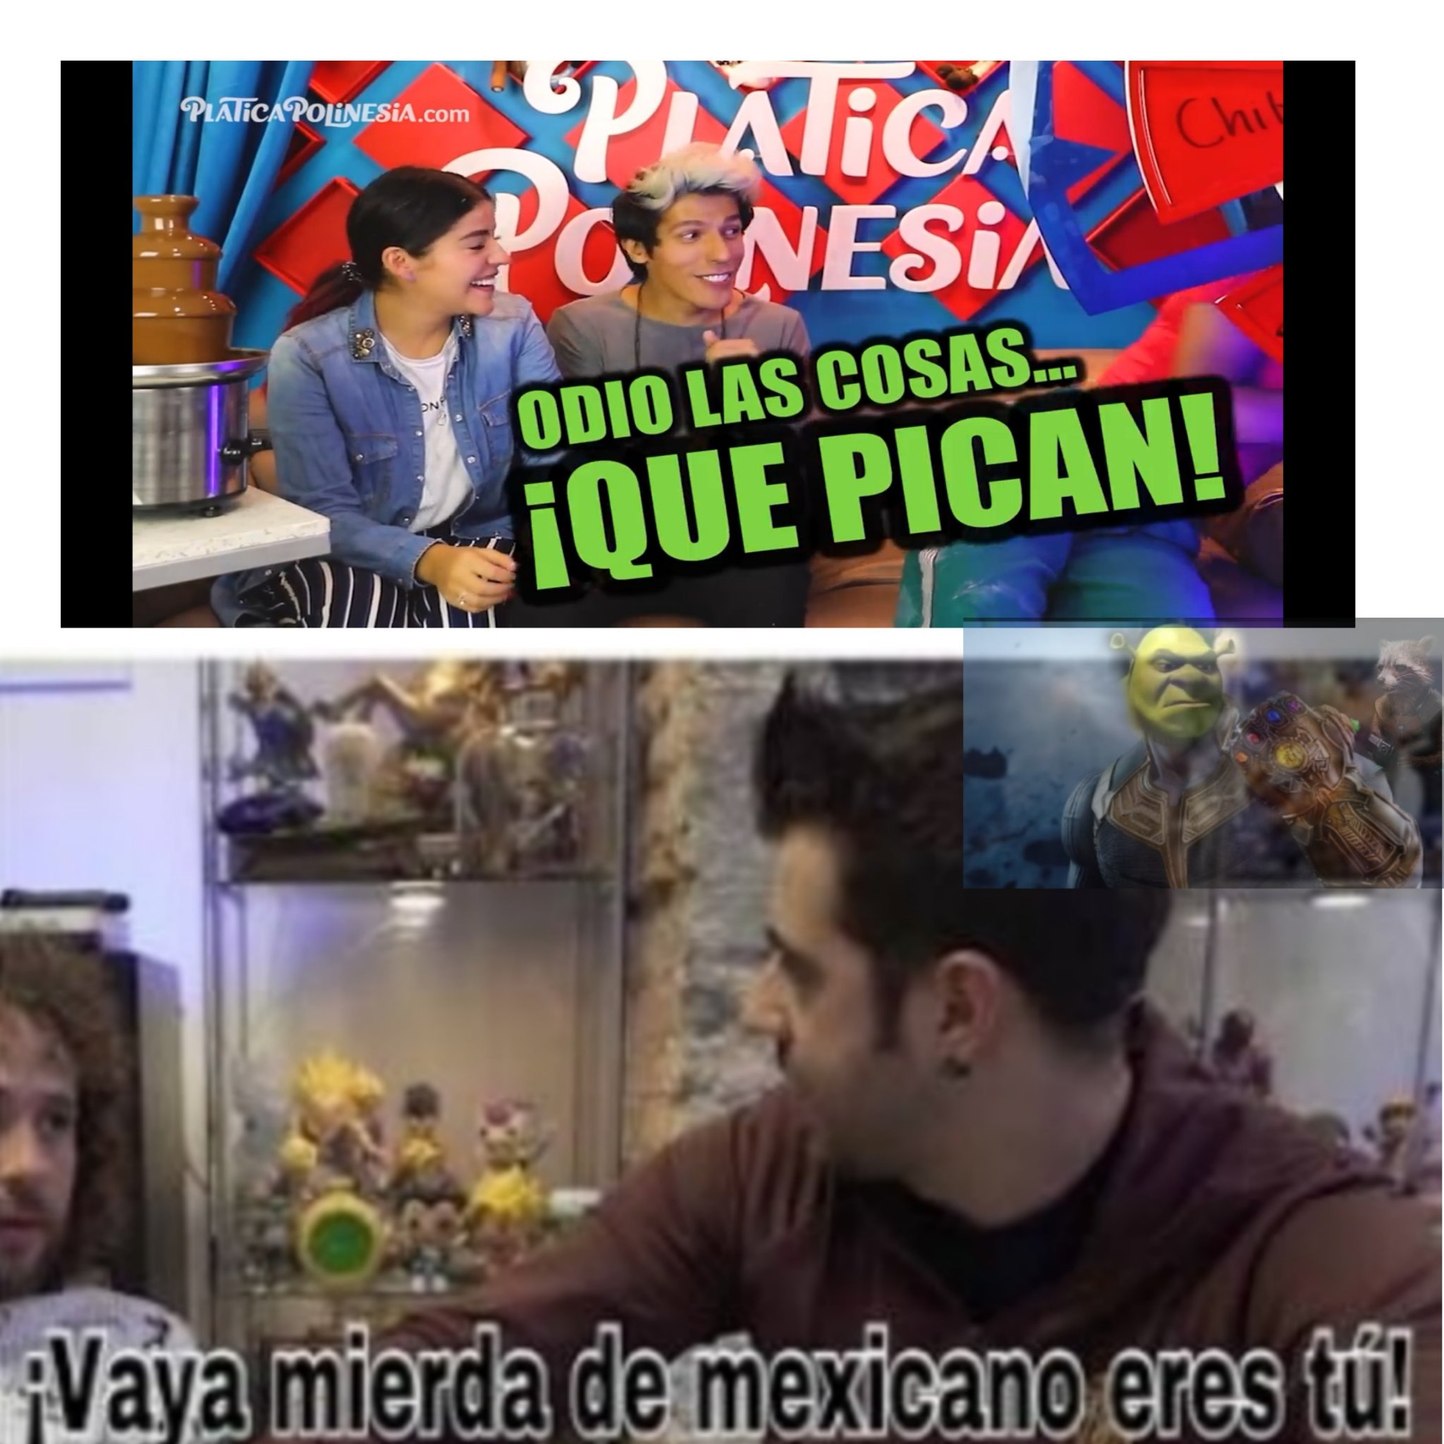 Los polinesios son mexicanos - meme